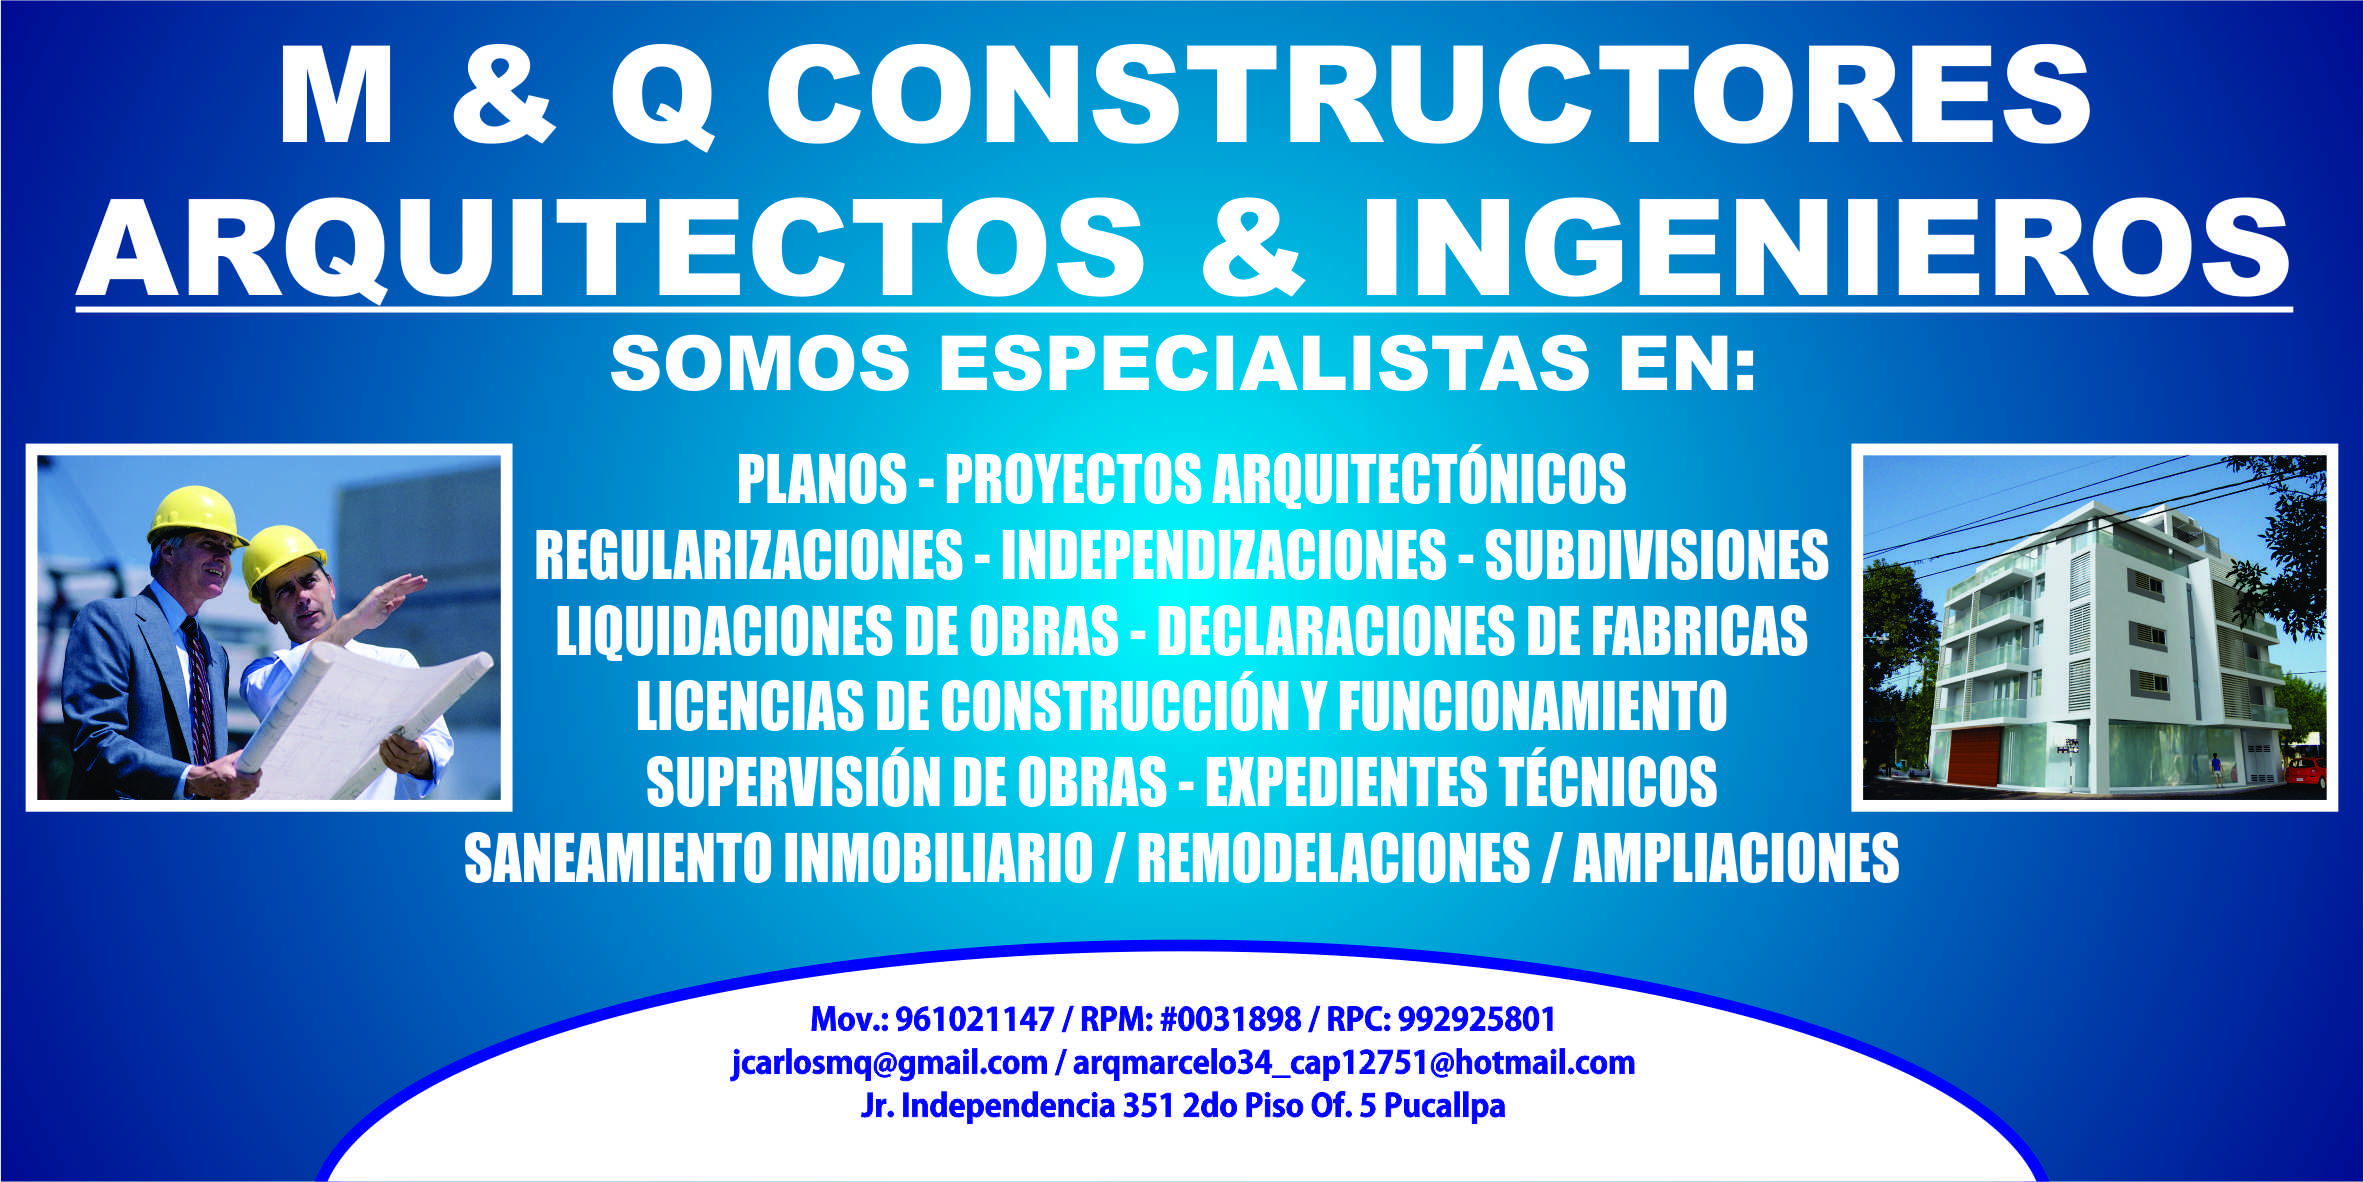 M & Q Constructores & Consultores / Arquitectos & Ingenieros logo